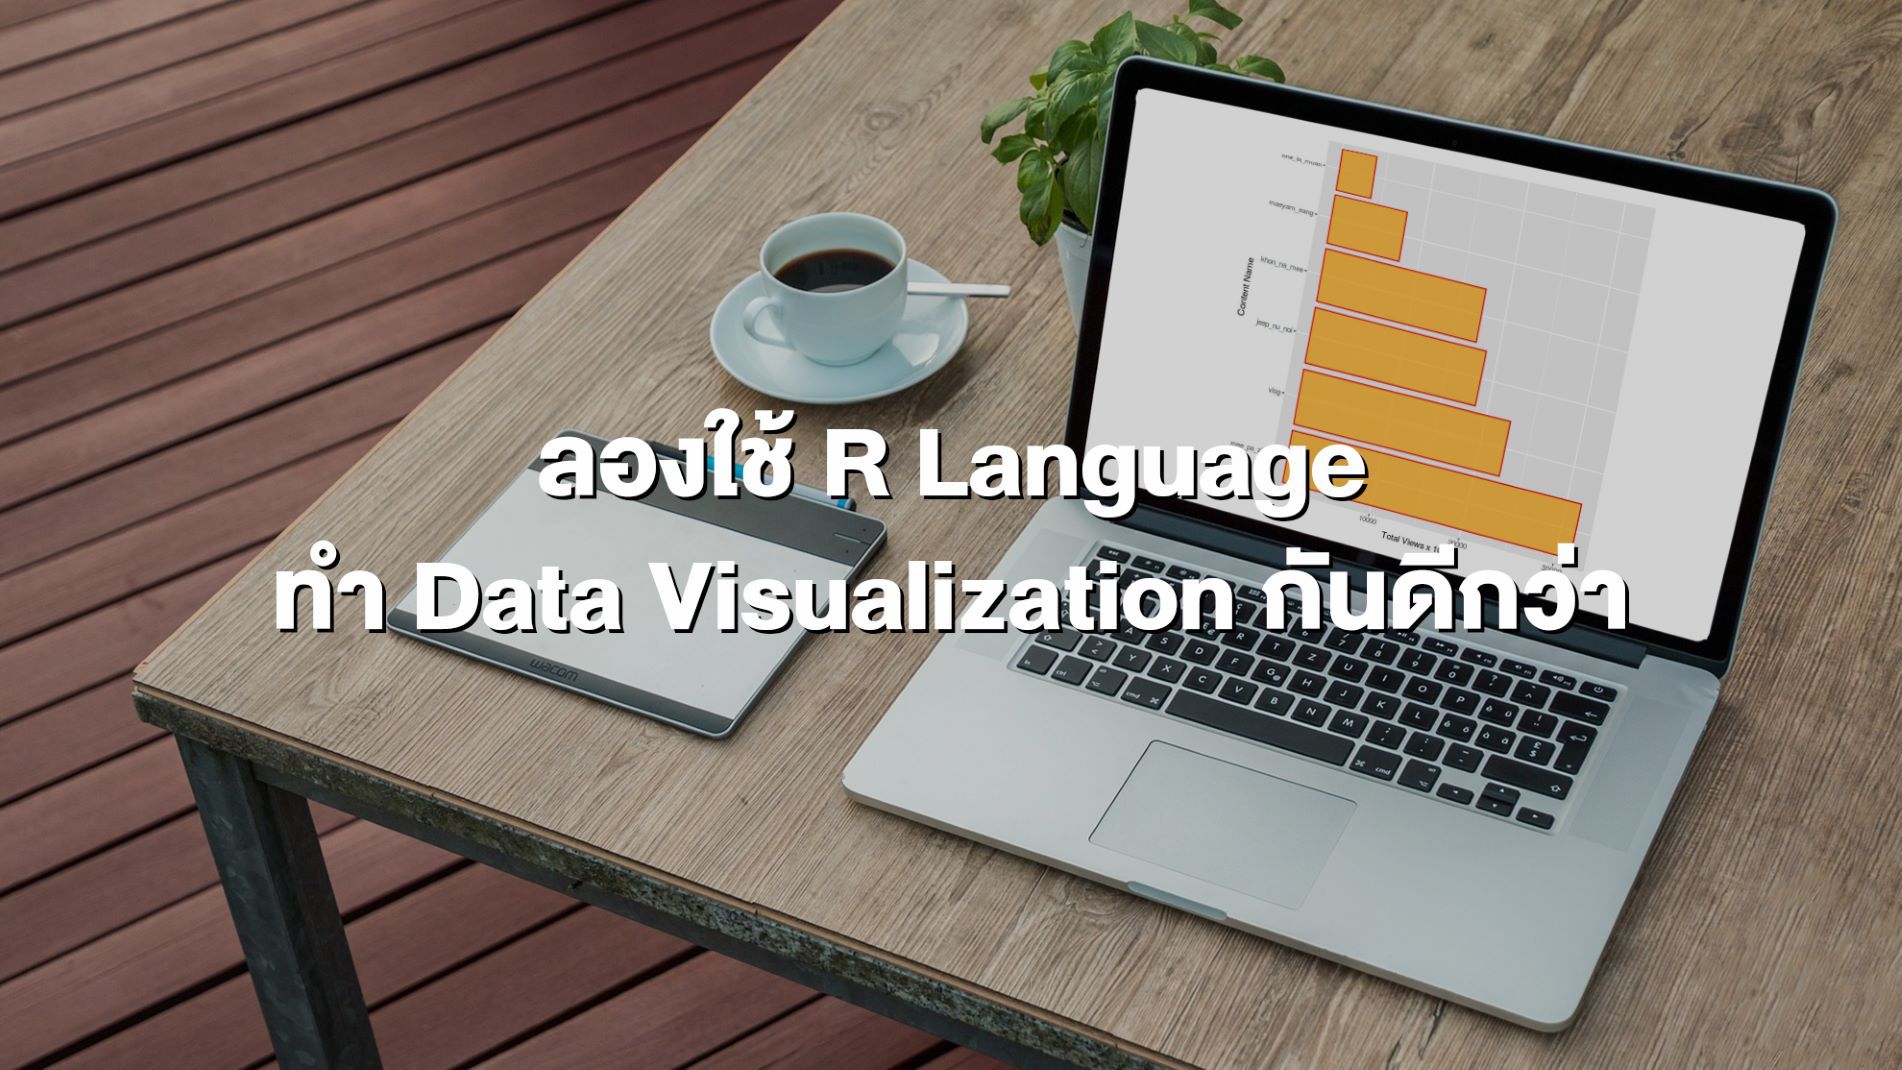 ลองใช้ R Language ทำ Data Visualization กันดีกว่า